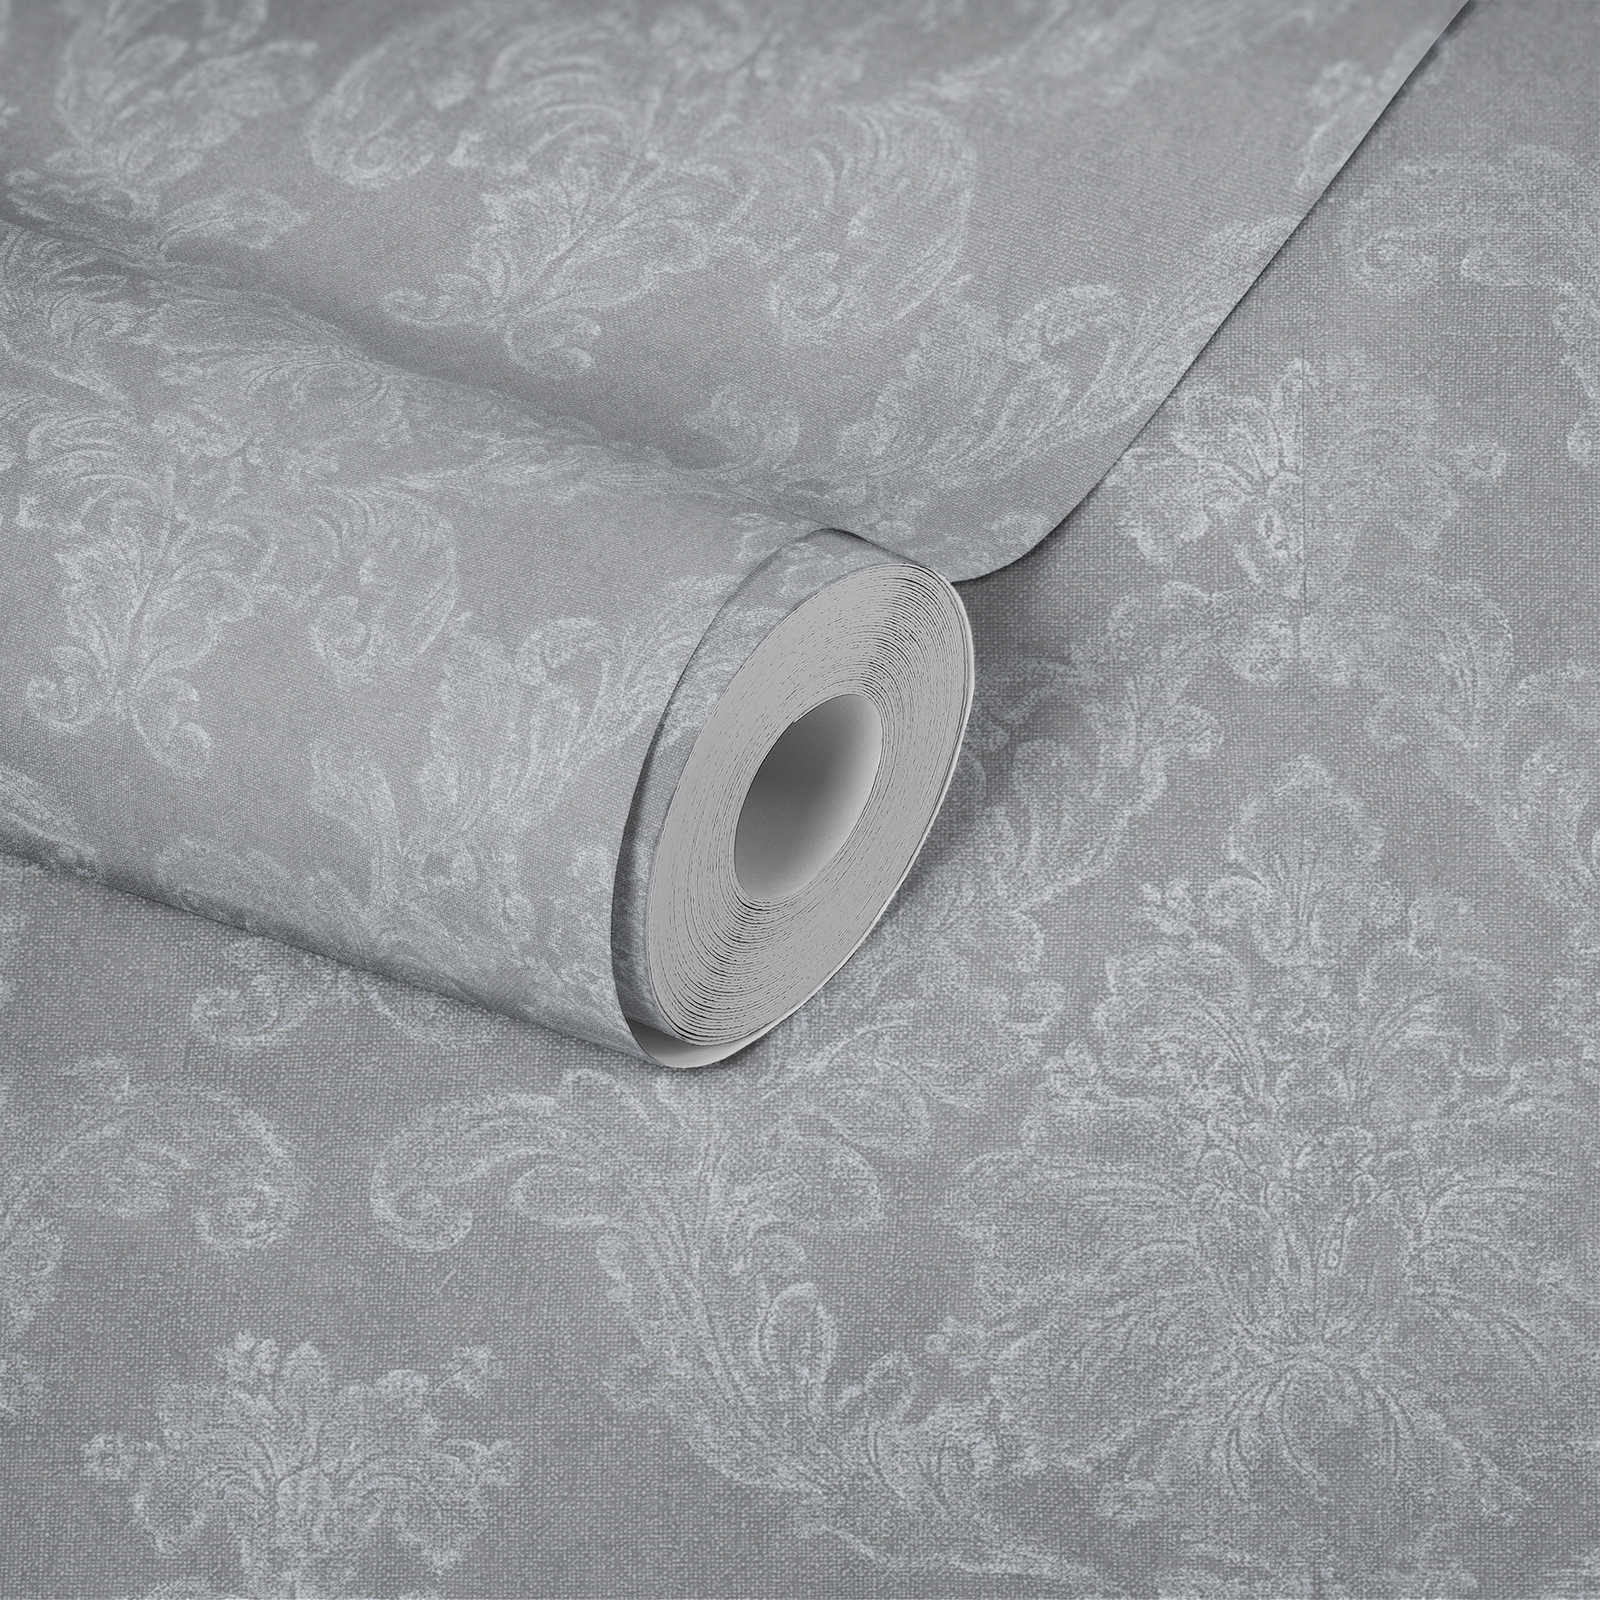             Papier peint ornemental style cottage avec aspect textile - gris, blanc
        